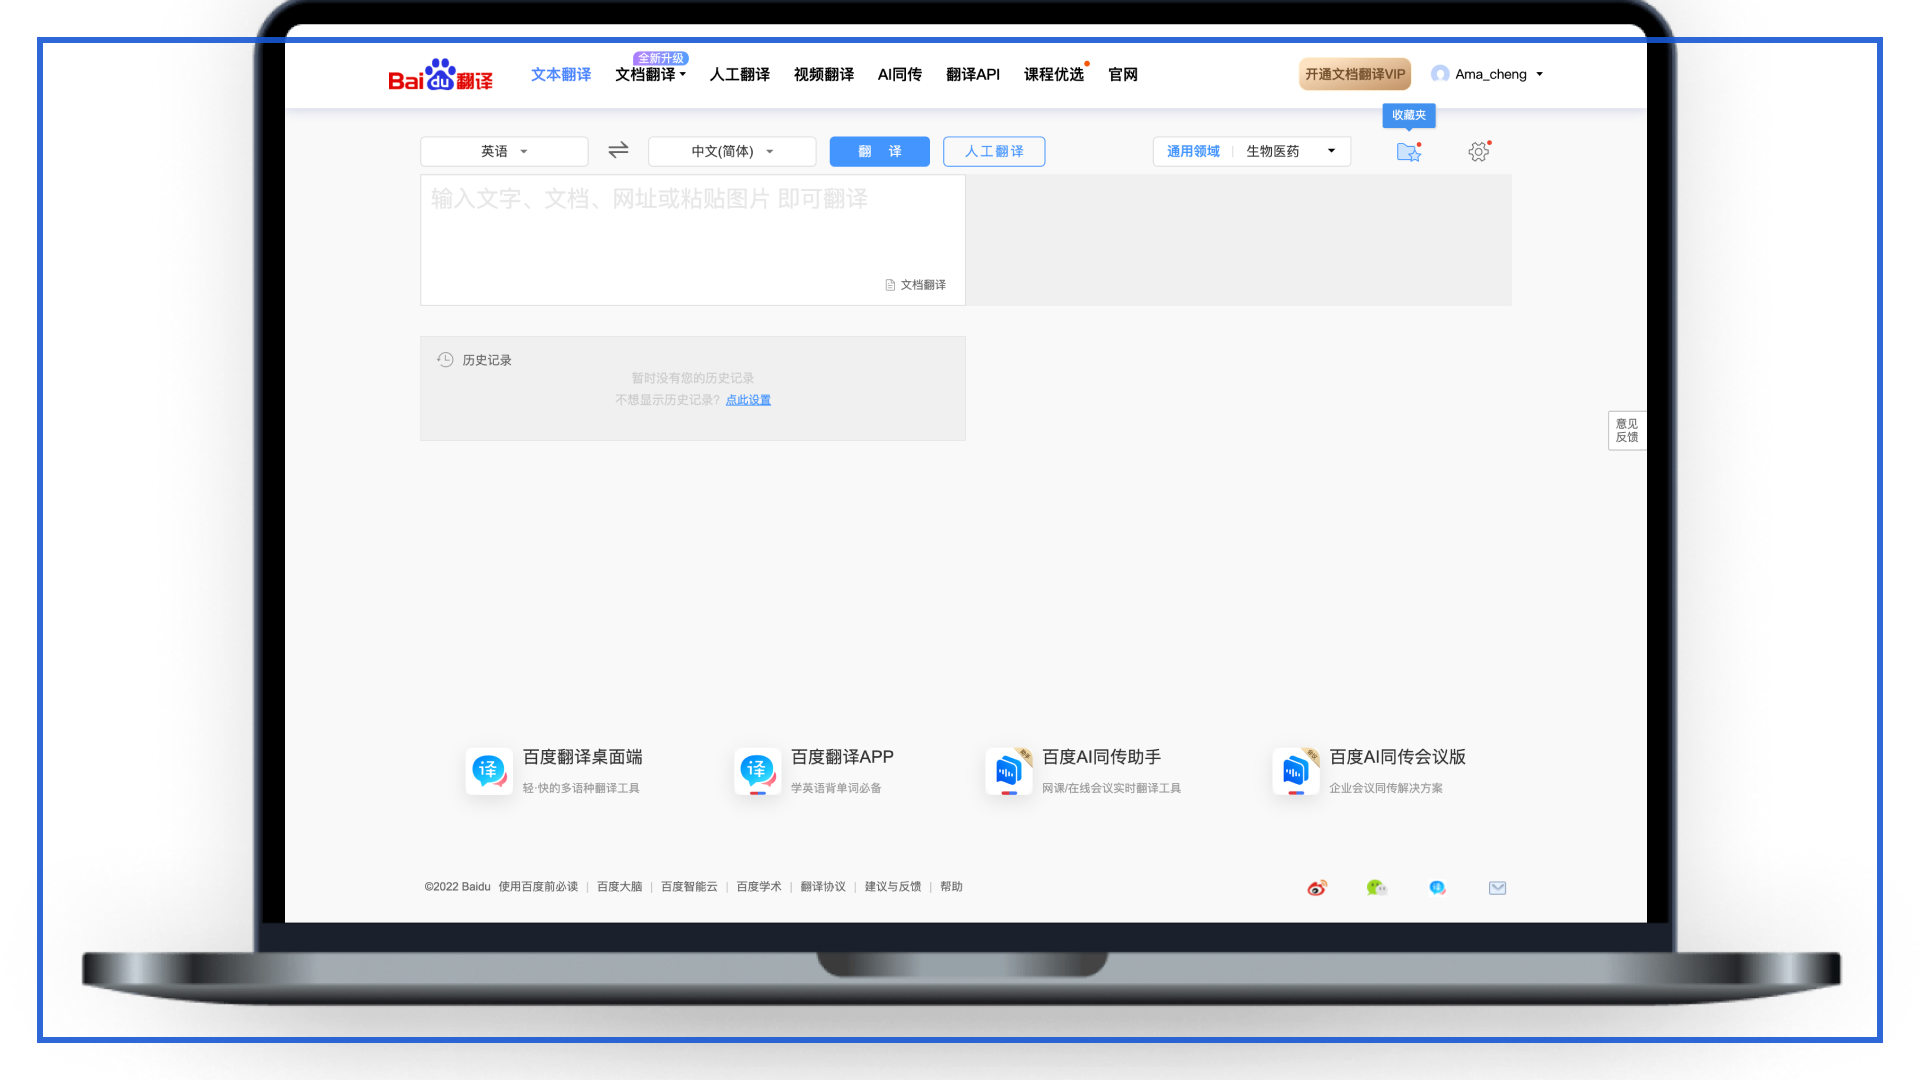 Baidu Fanyi Translation Service